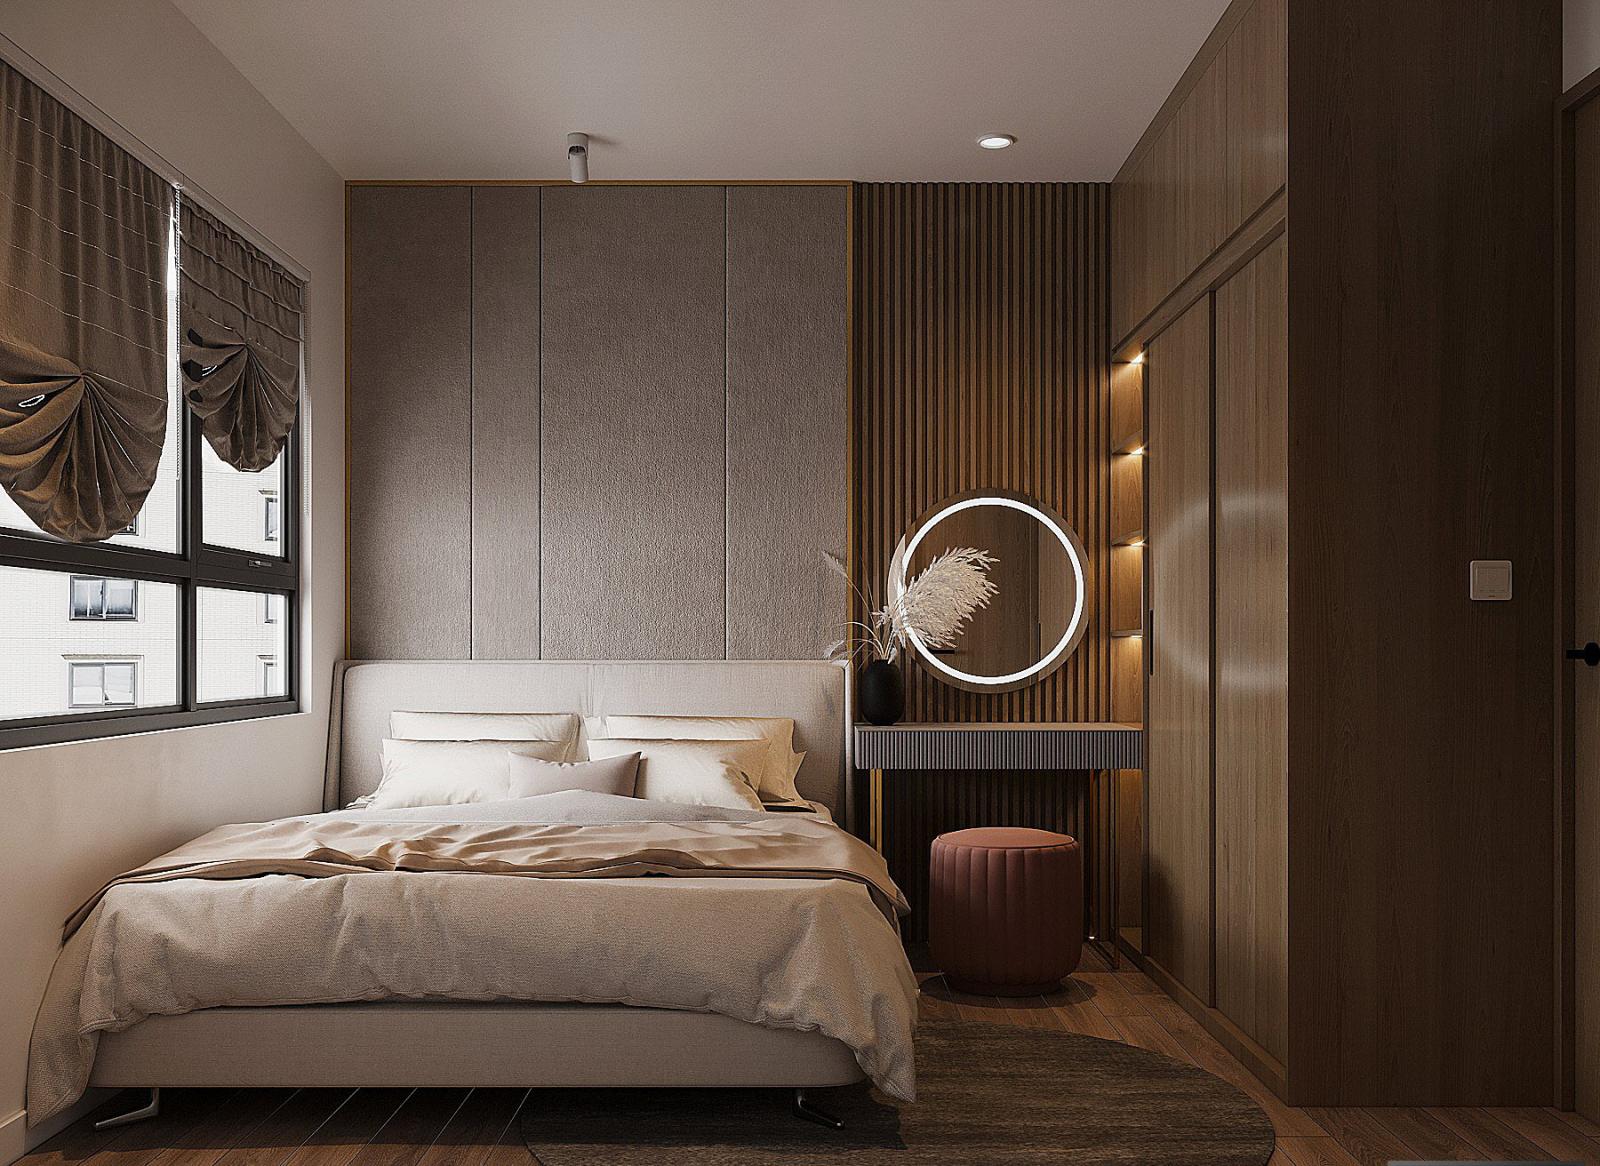 Bất chấp diện tích có phần hạn chế, phòng ngủ vẫn toát lên vẻ sang trọng, đẳng cấp. Bảng màu trong căn phòng được chia đều cho sắc nâu gỗ và màu ghi sáng.